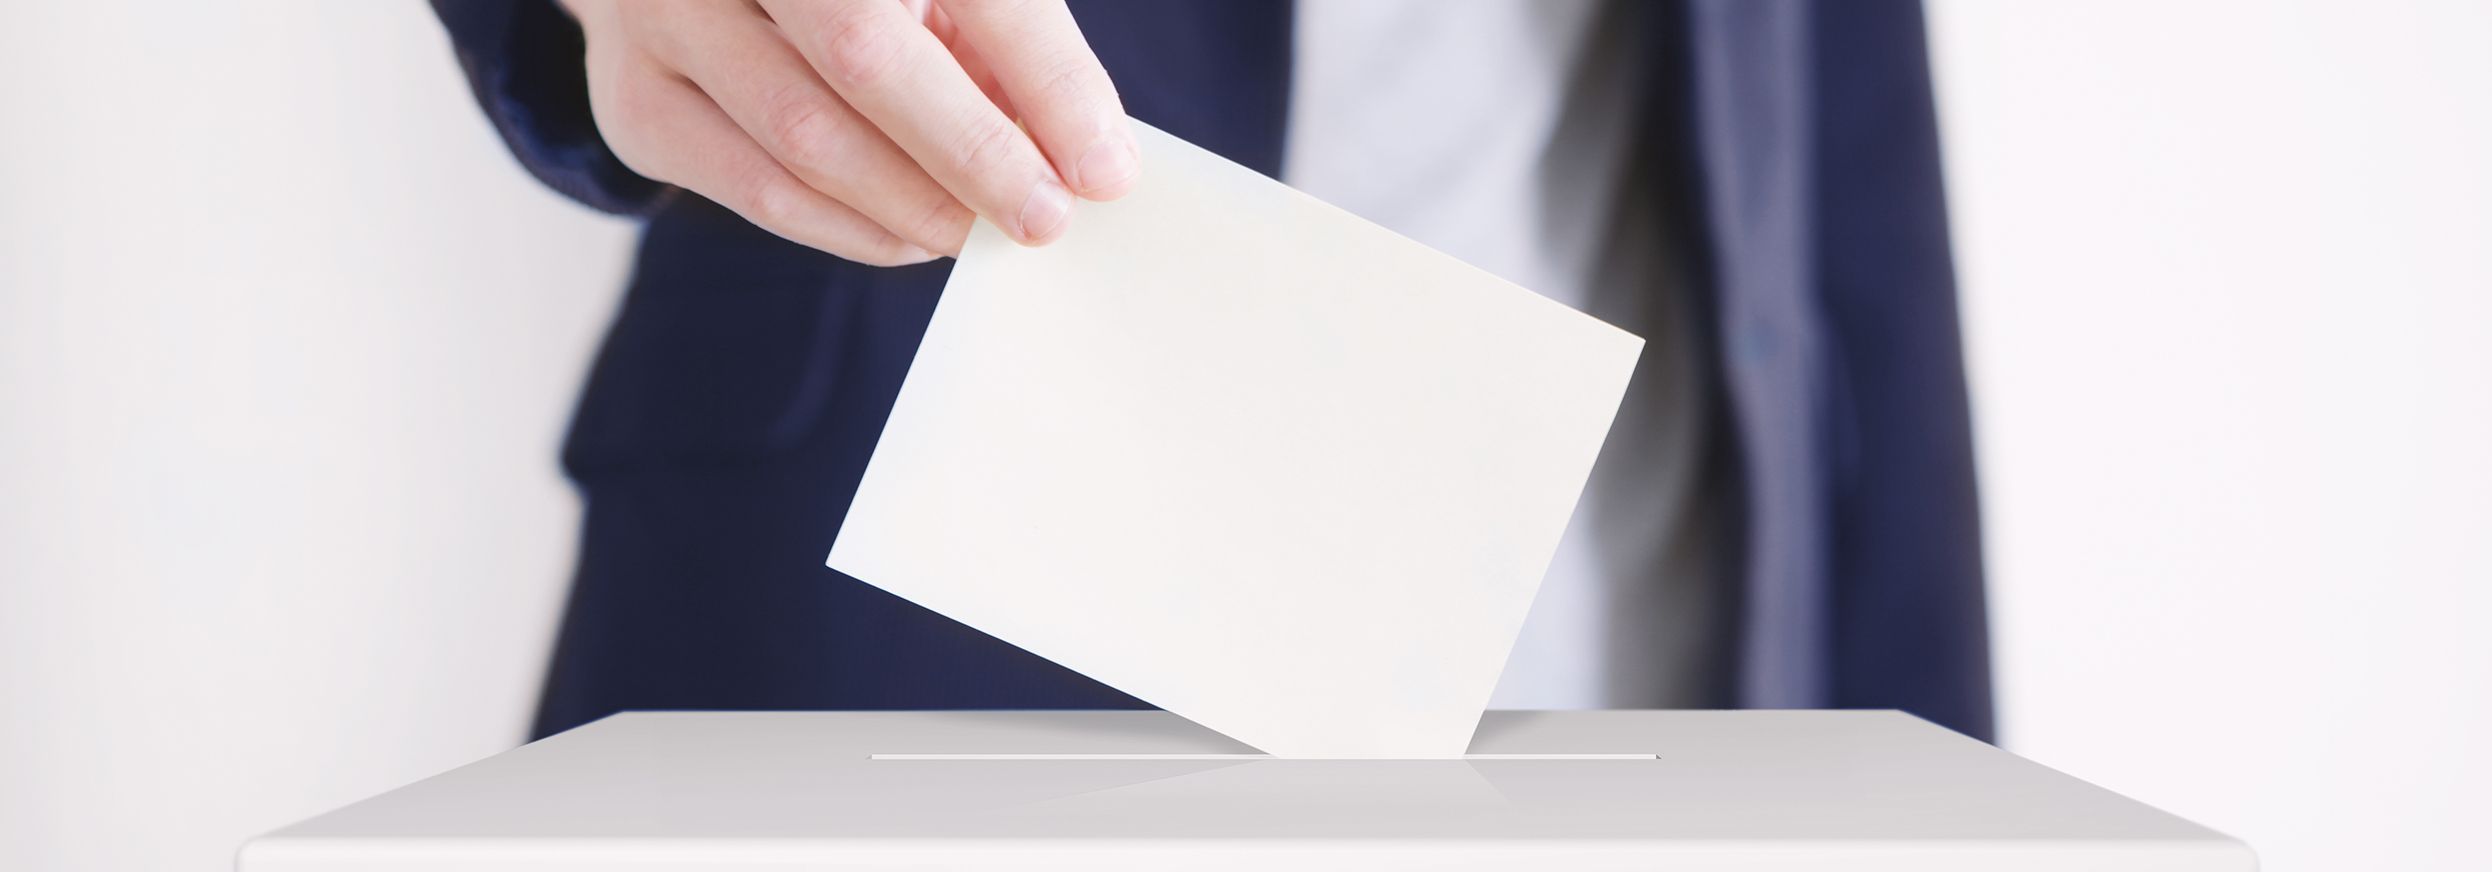 Mann, der einen Zettel in eine Wahlurne wirft